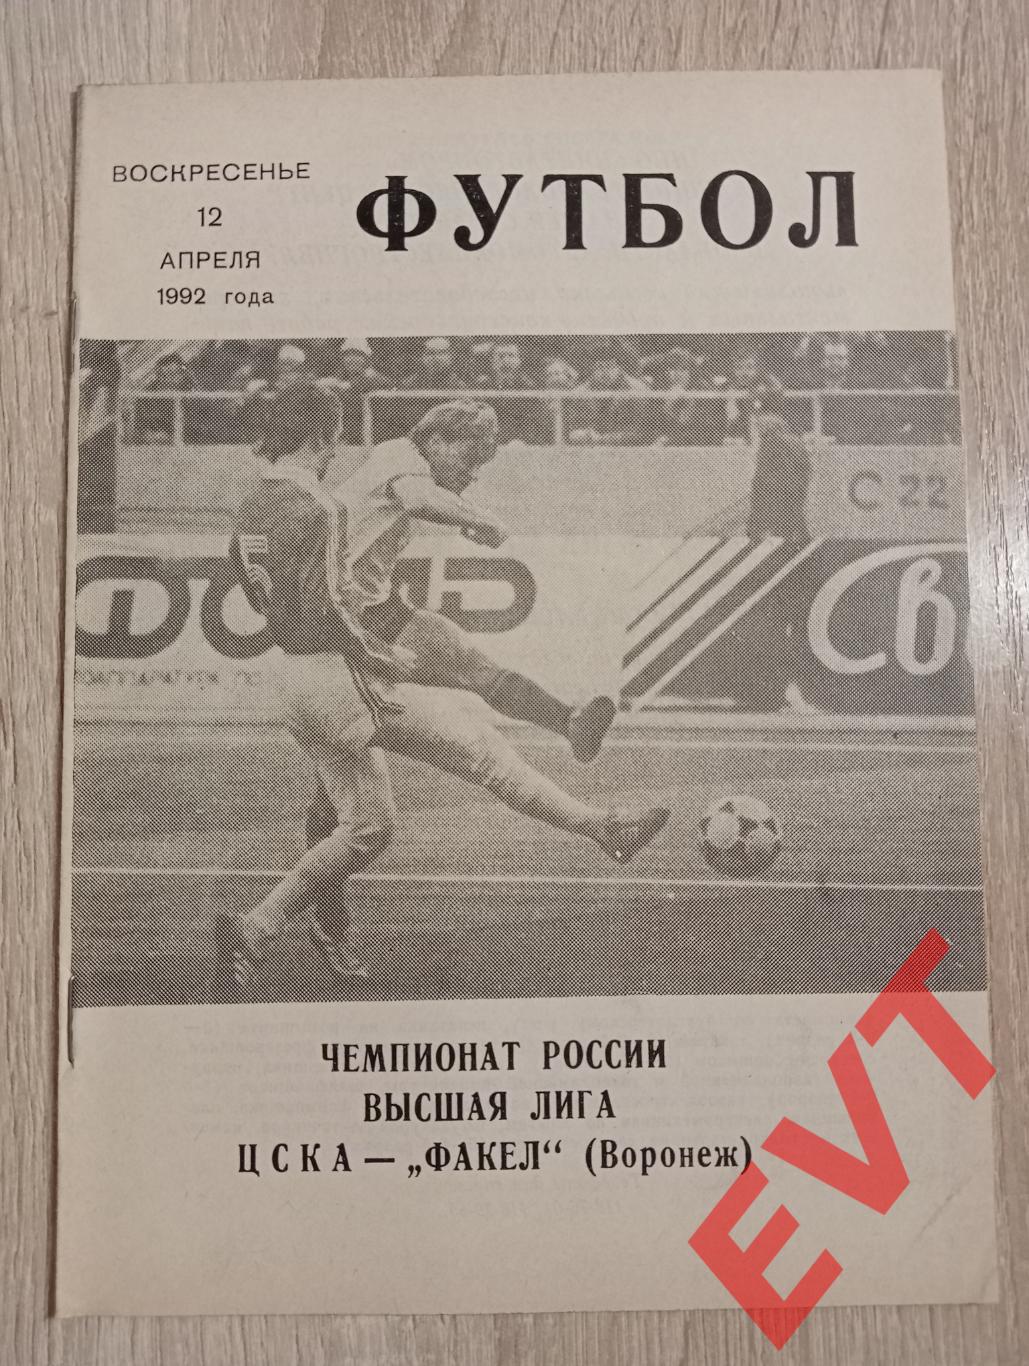 ЦСКА - Факел Воронеж. Высшая лига. 12.04.1992.